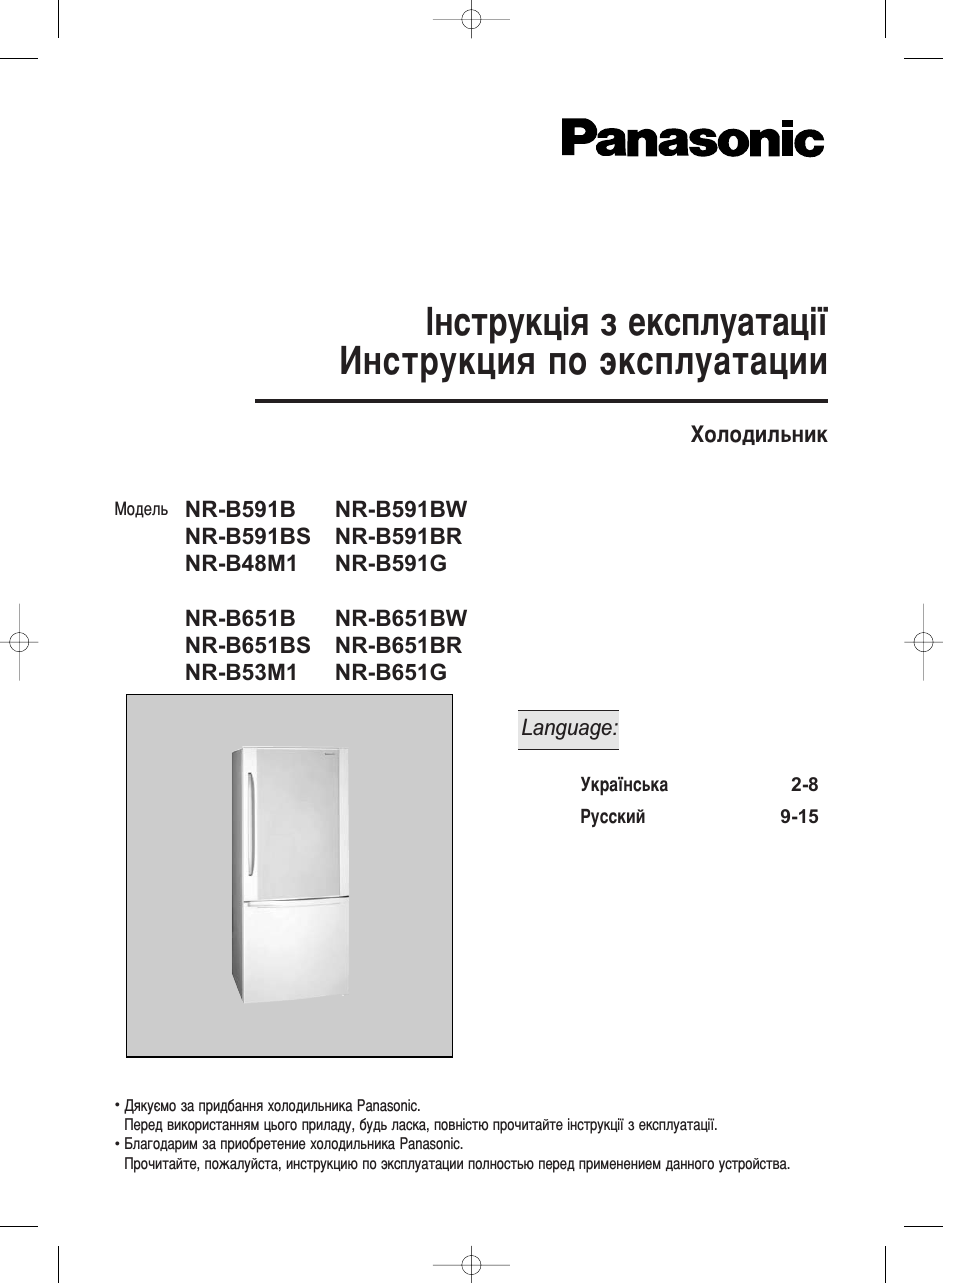 Инструкция по эксплуатации Panasonic NR-B651BR-C4 | 15 страниц